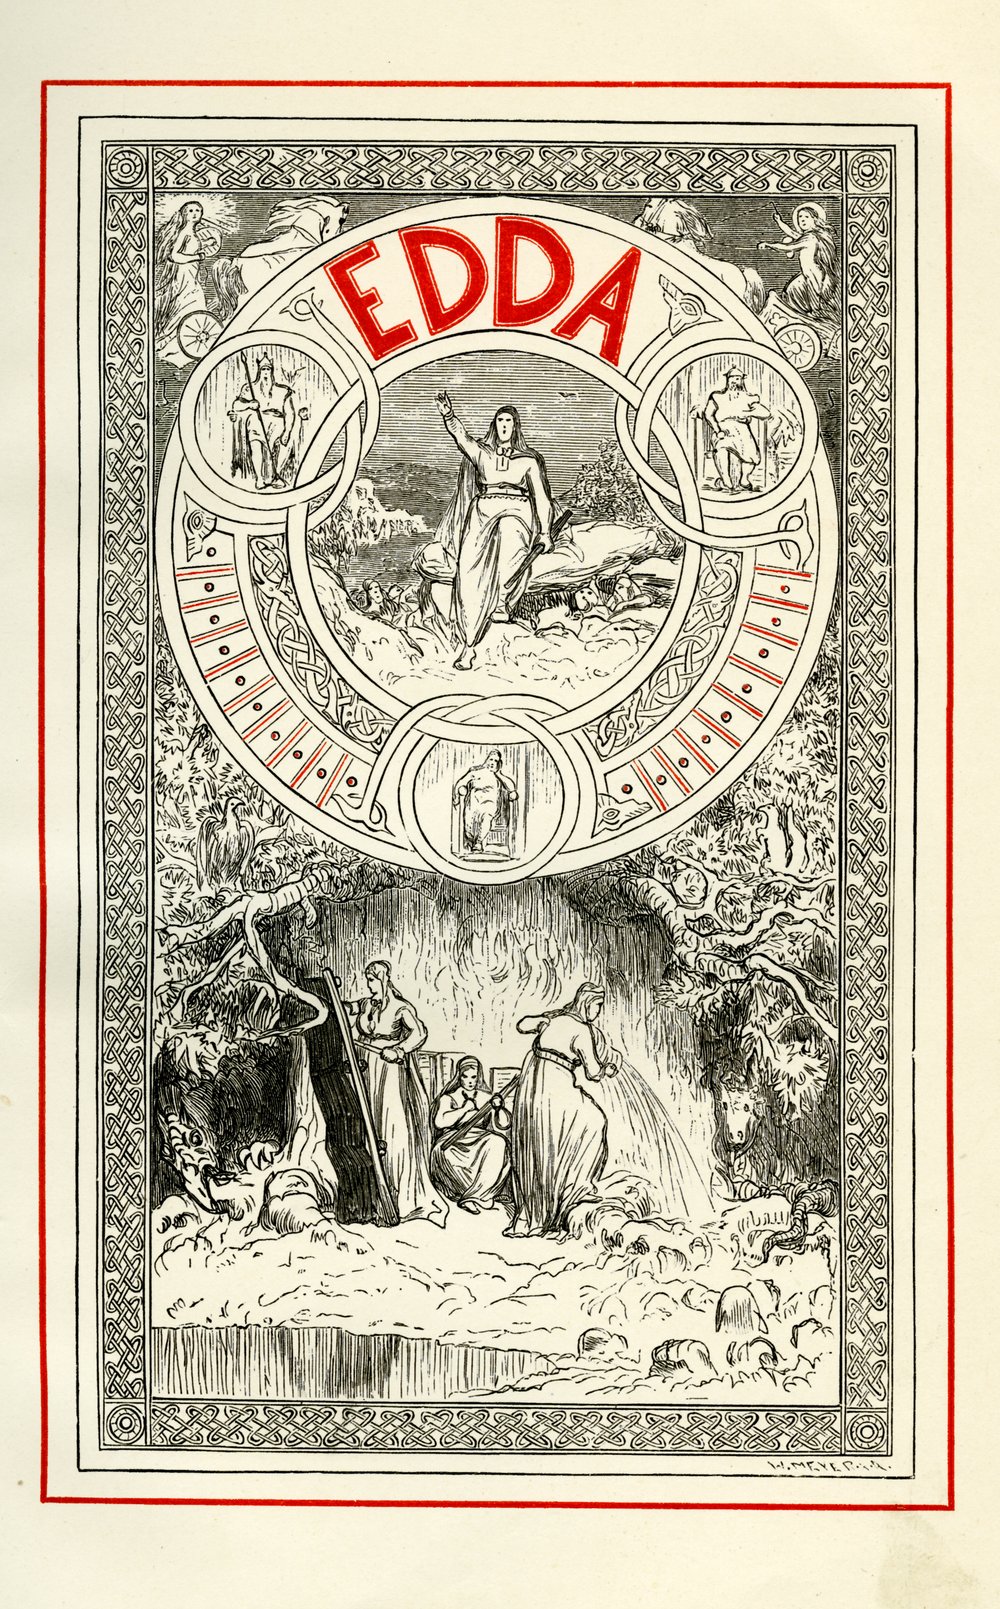 Cover of the Edda